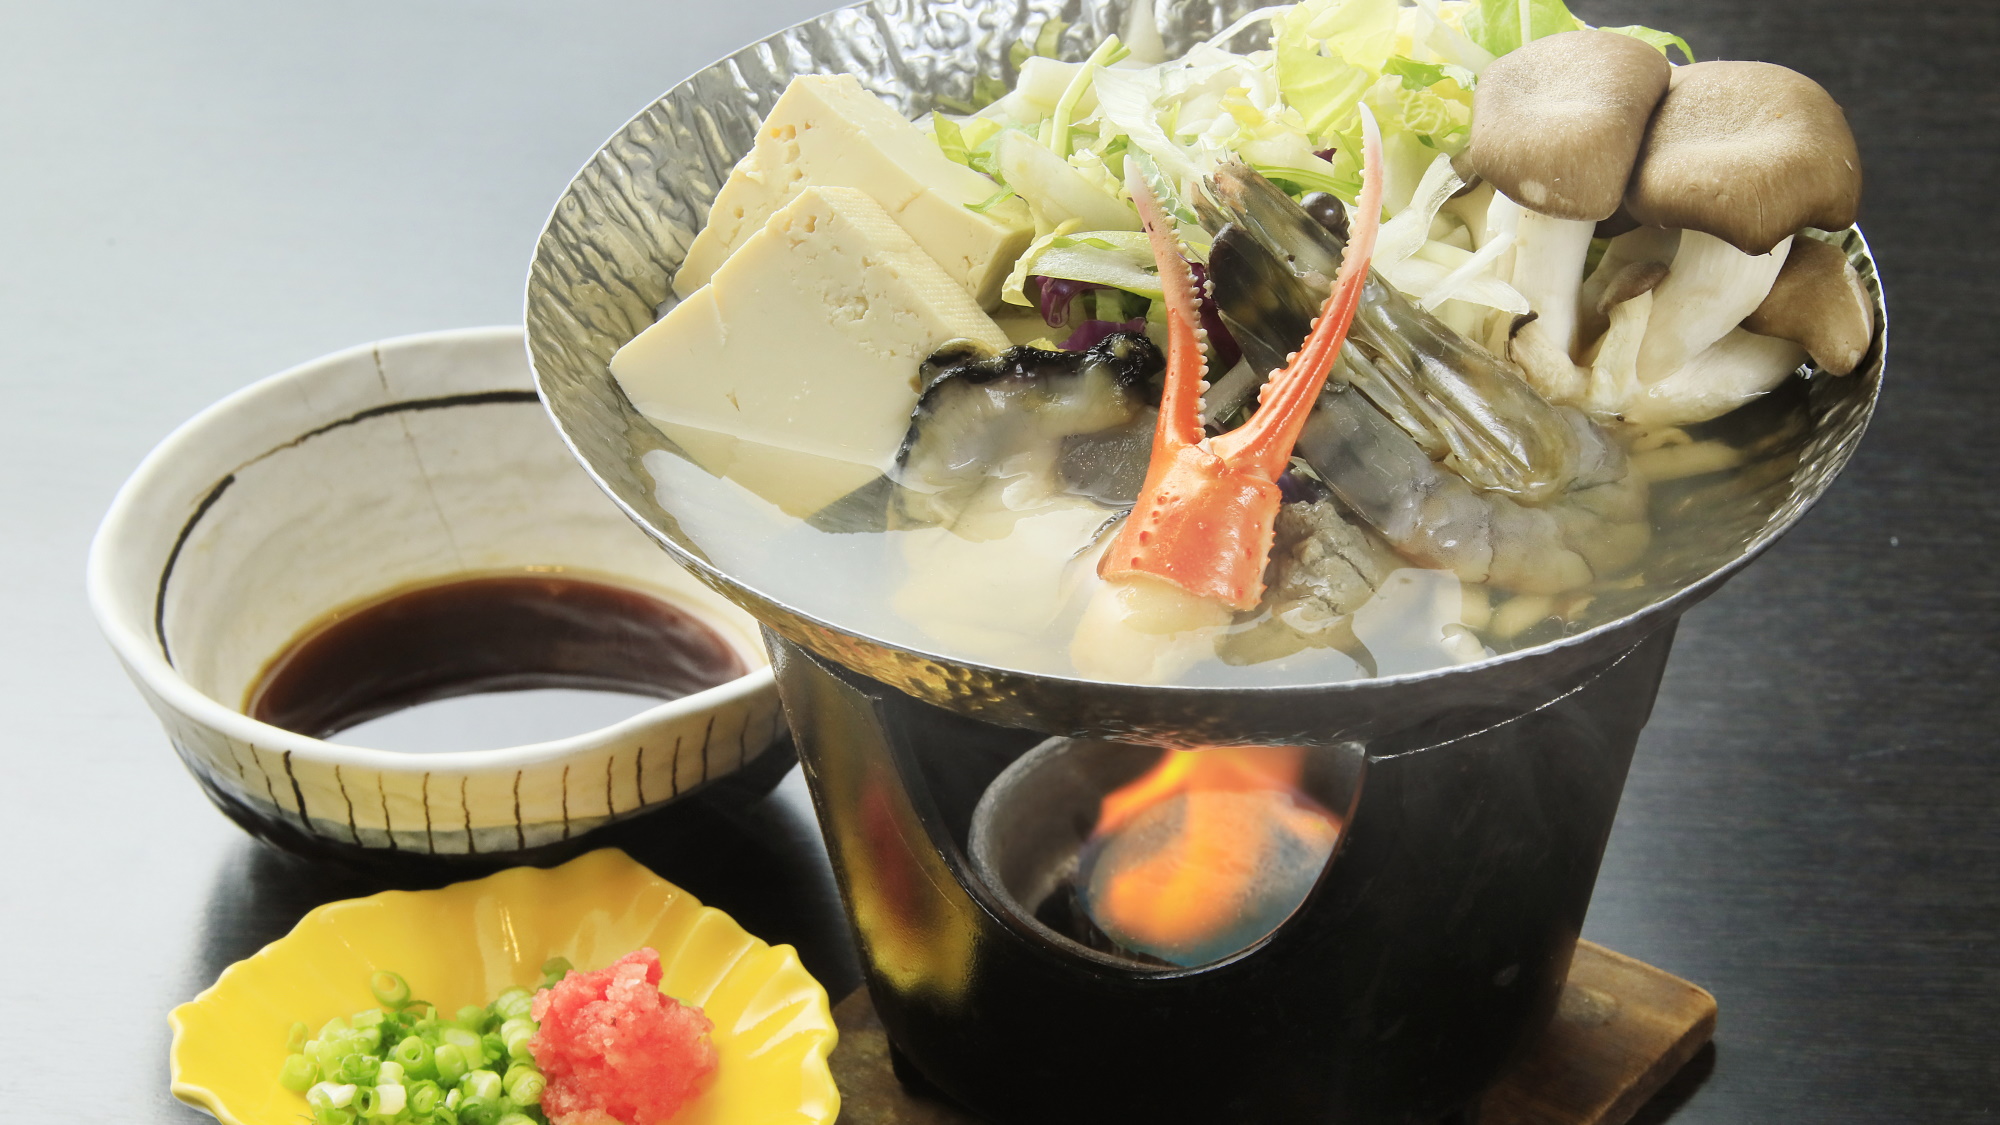 【スタンダード会席】選べるメイン「海鮮鍋」※一例